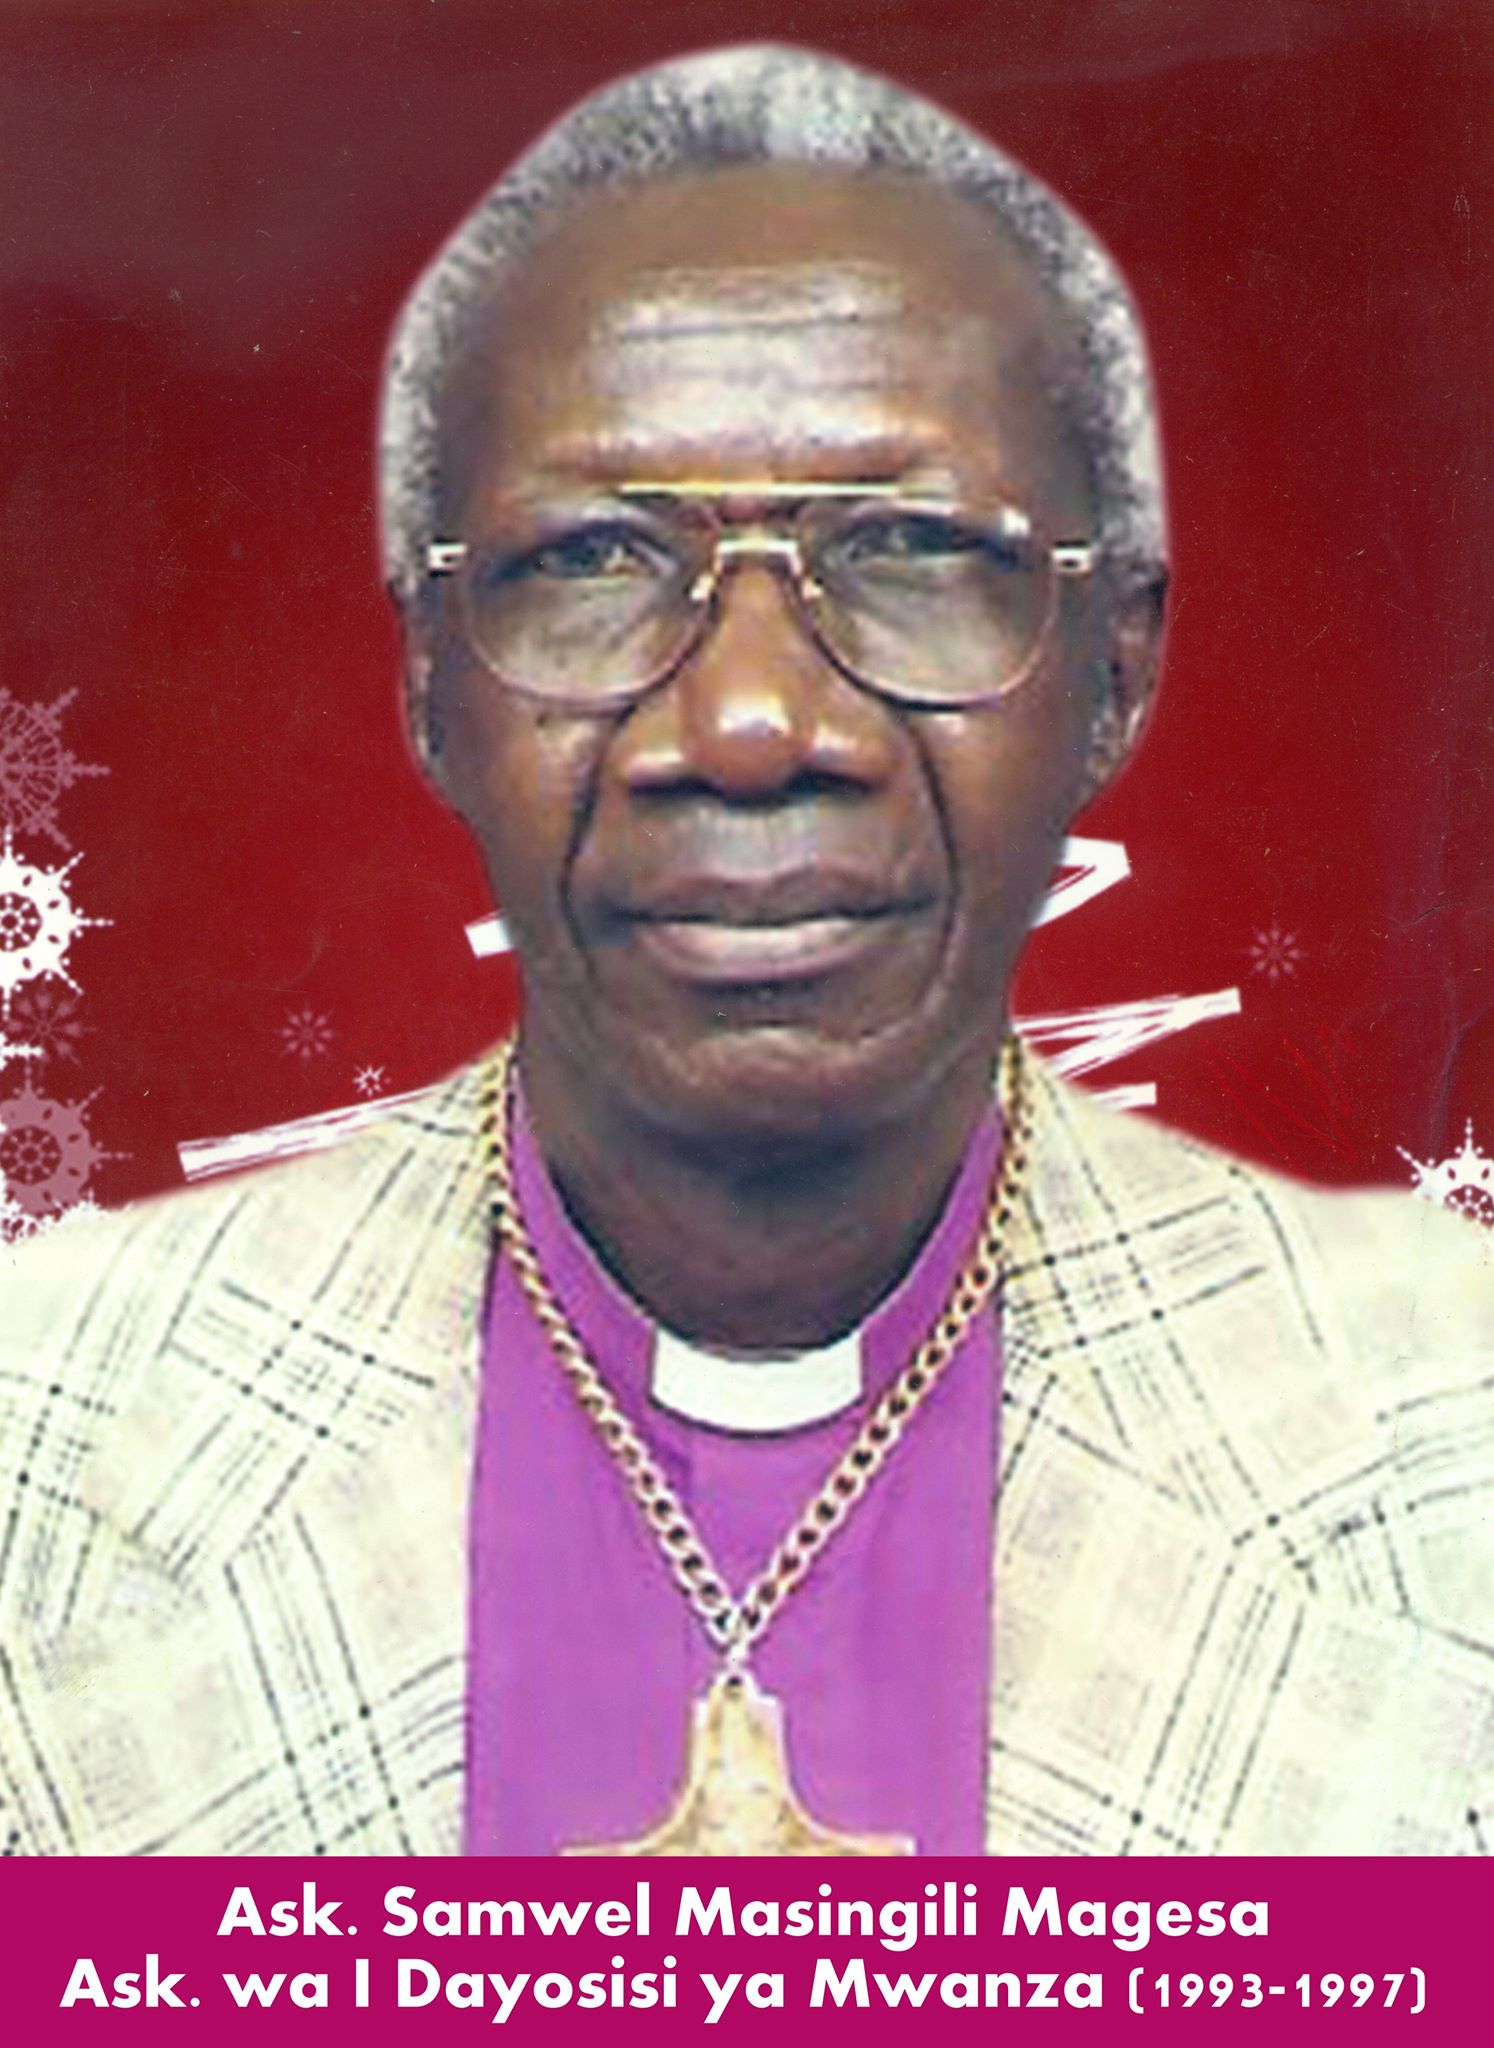 Bishop Samweli Masingili Magesa